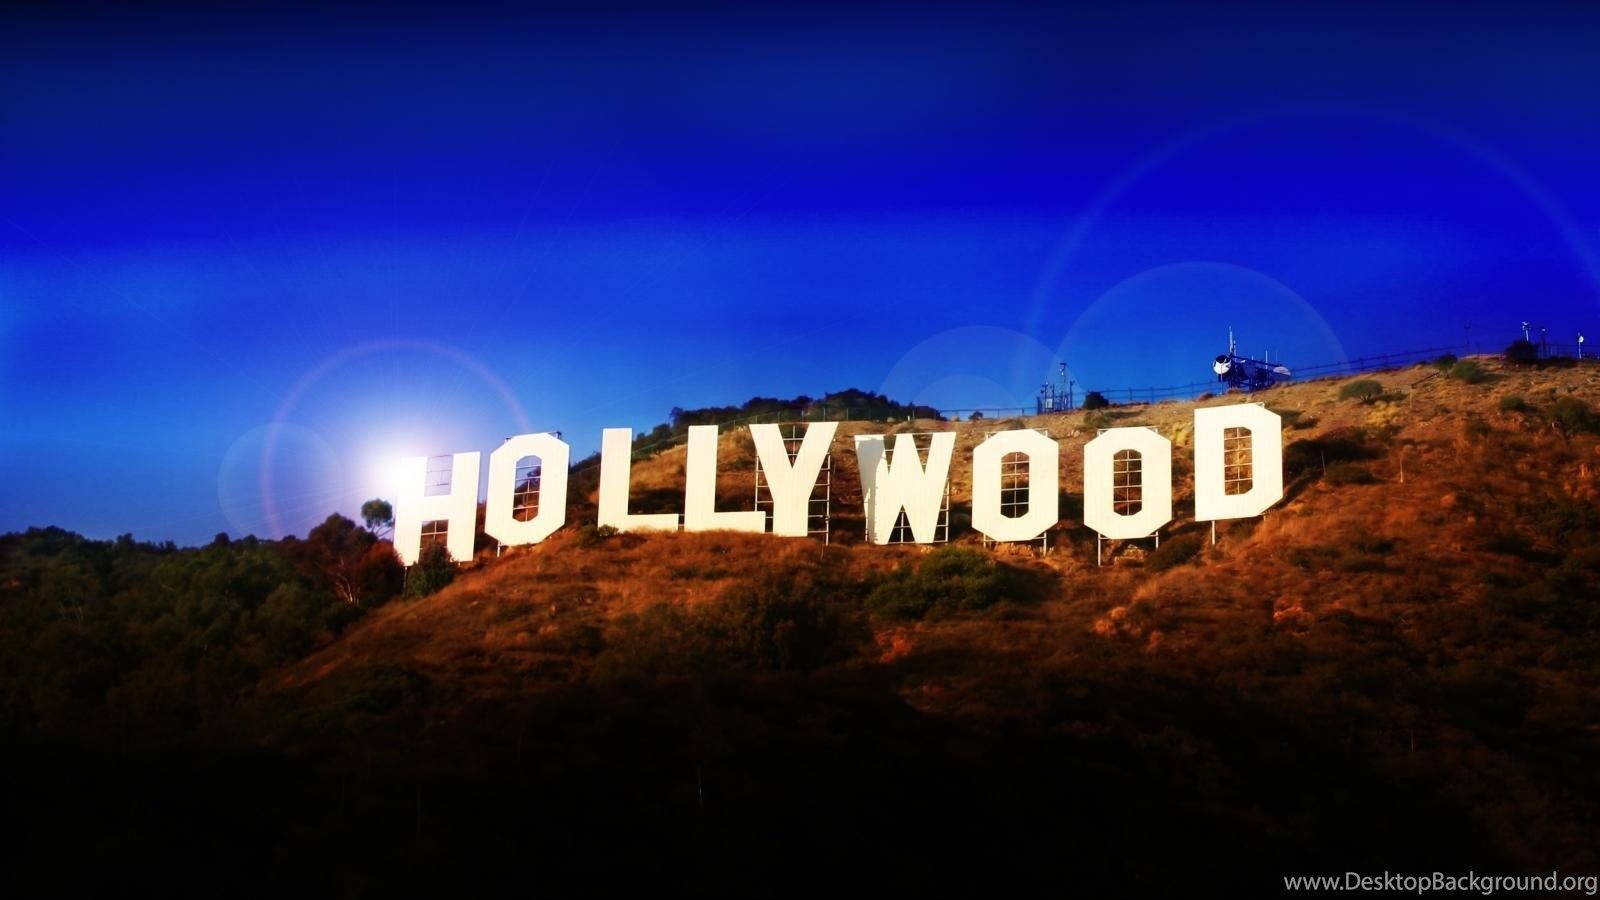 Hollywood Hills Wallpaper Desktop Background